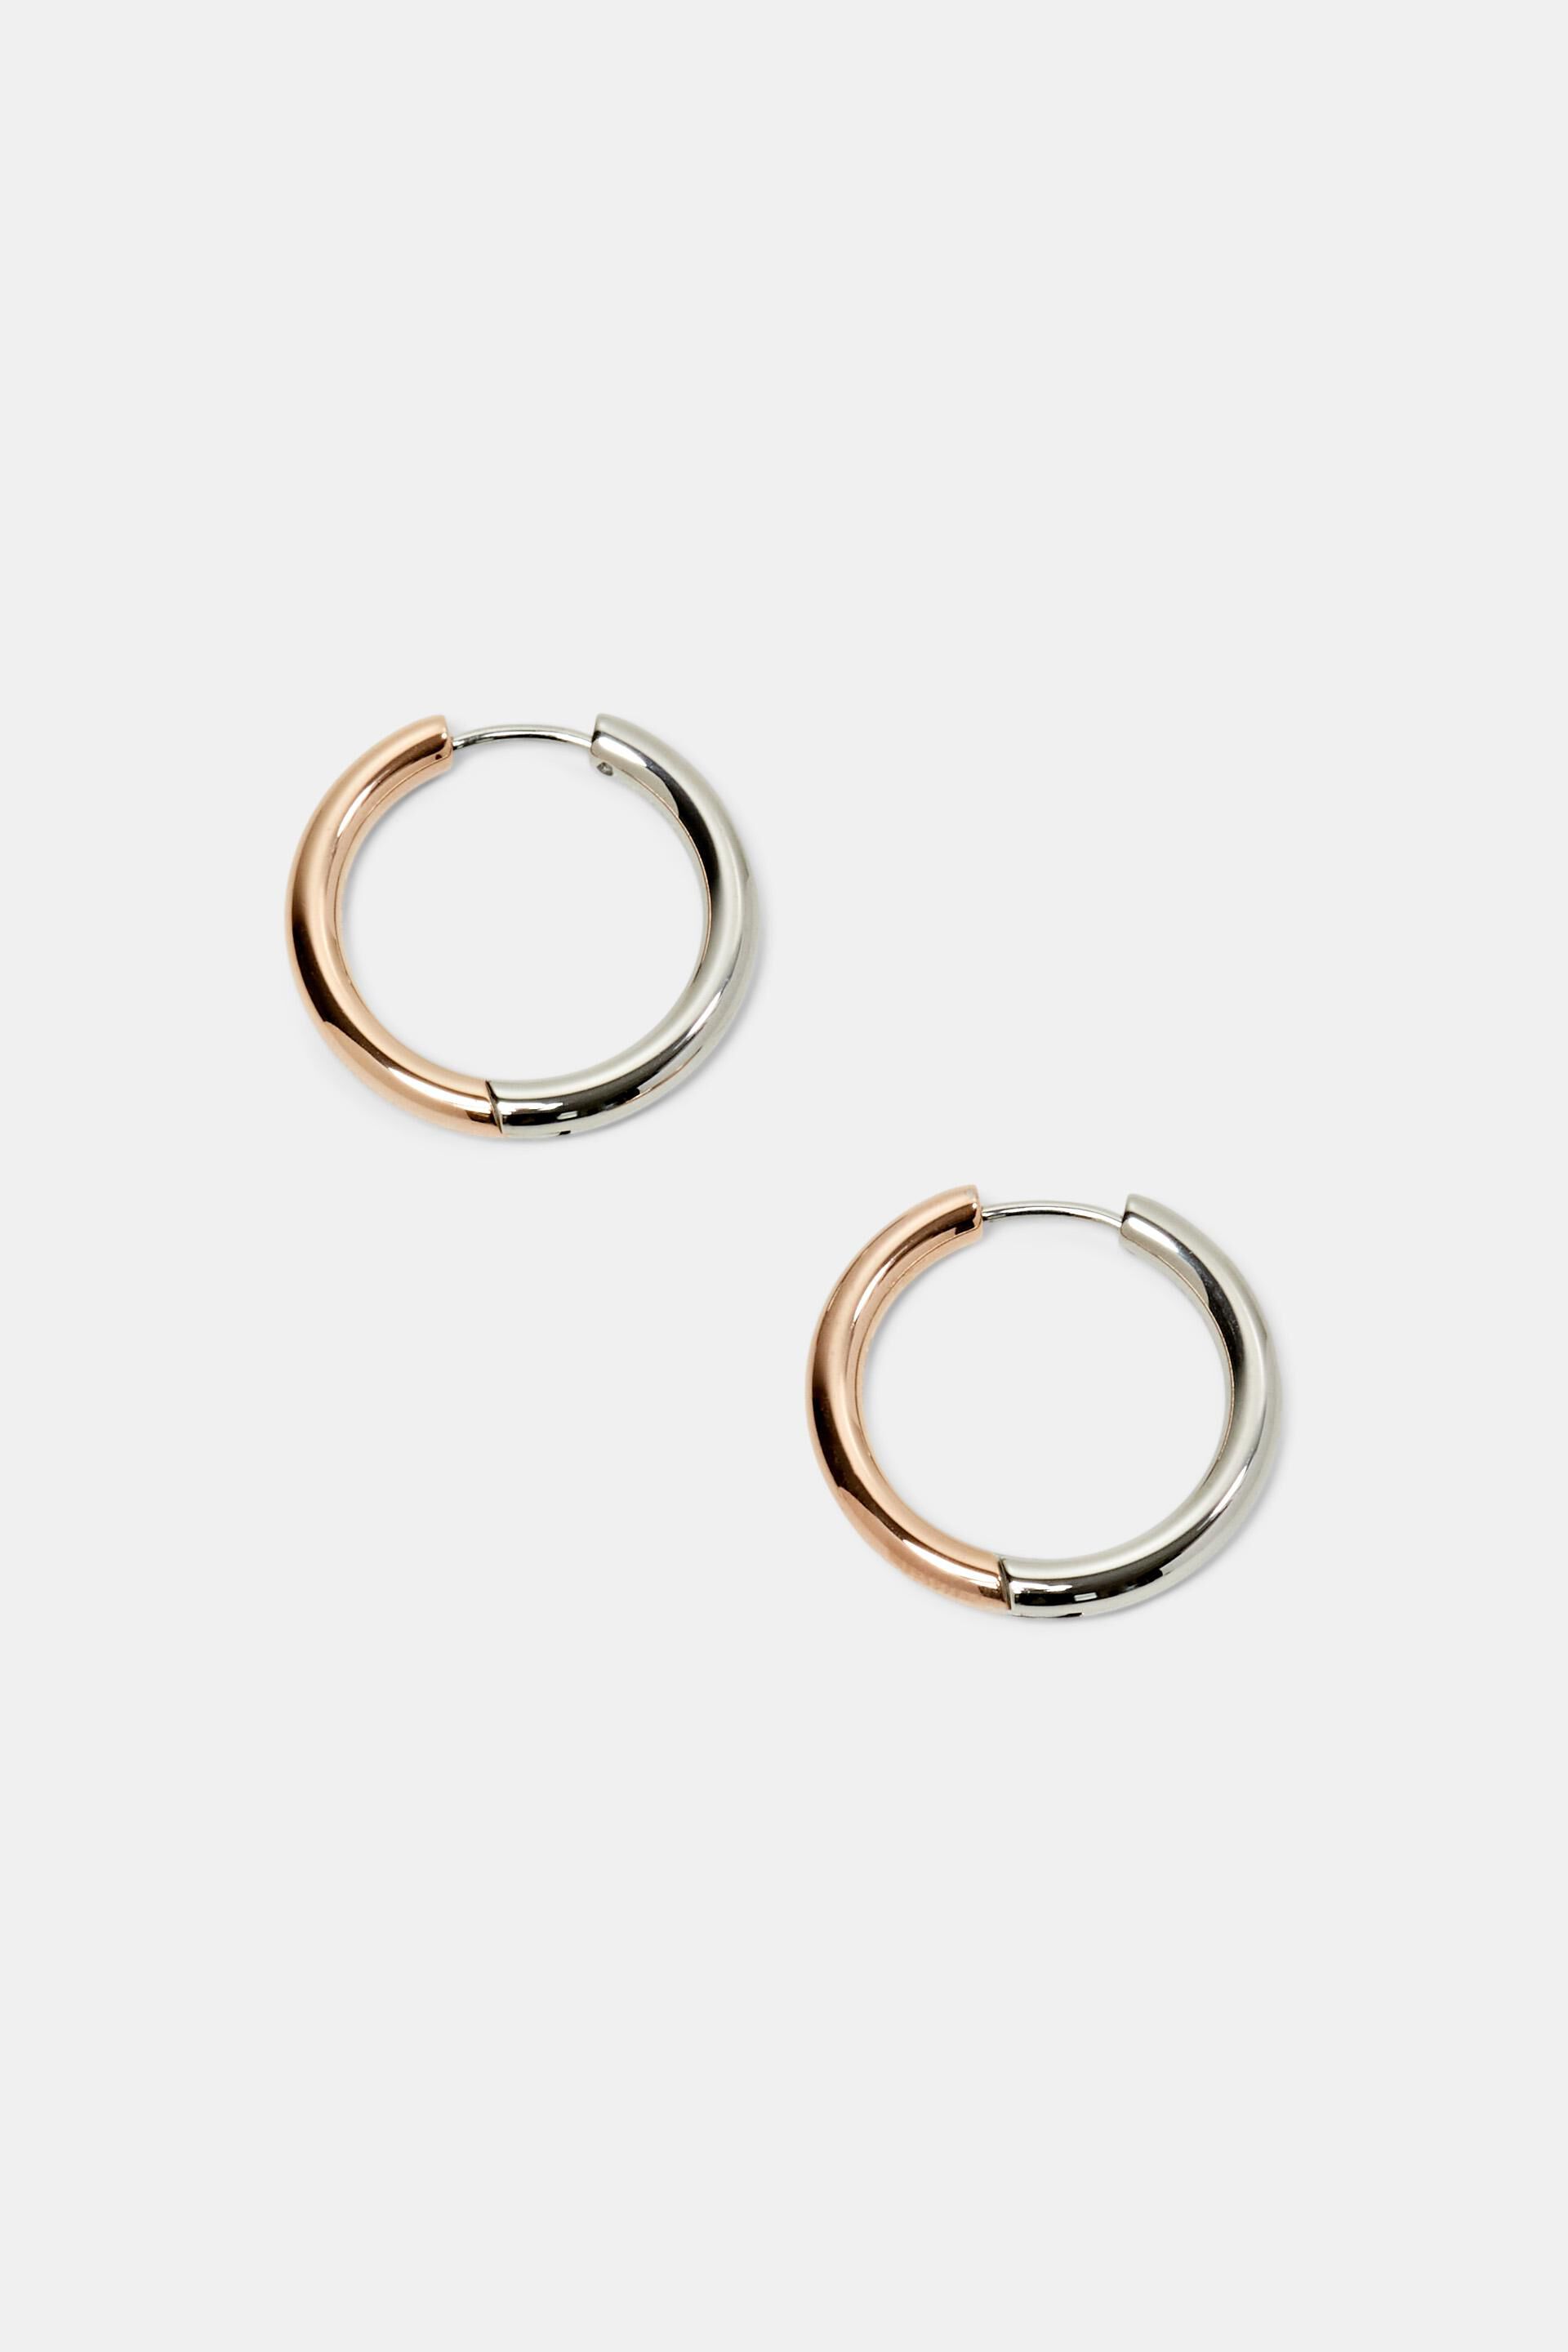 Esprit earrings, Bi-color hoop steel stainless